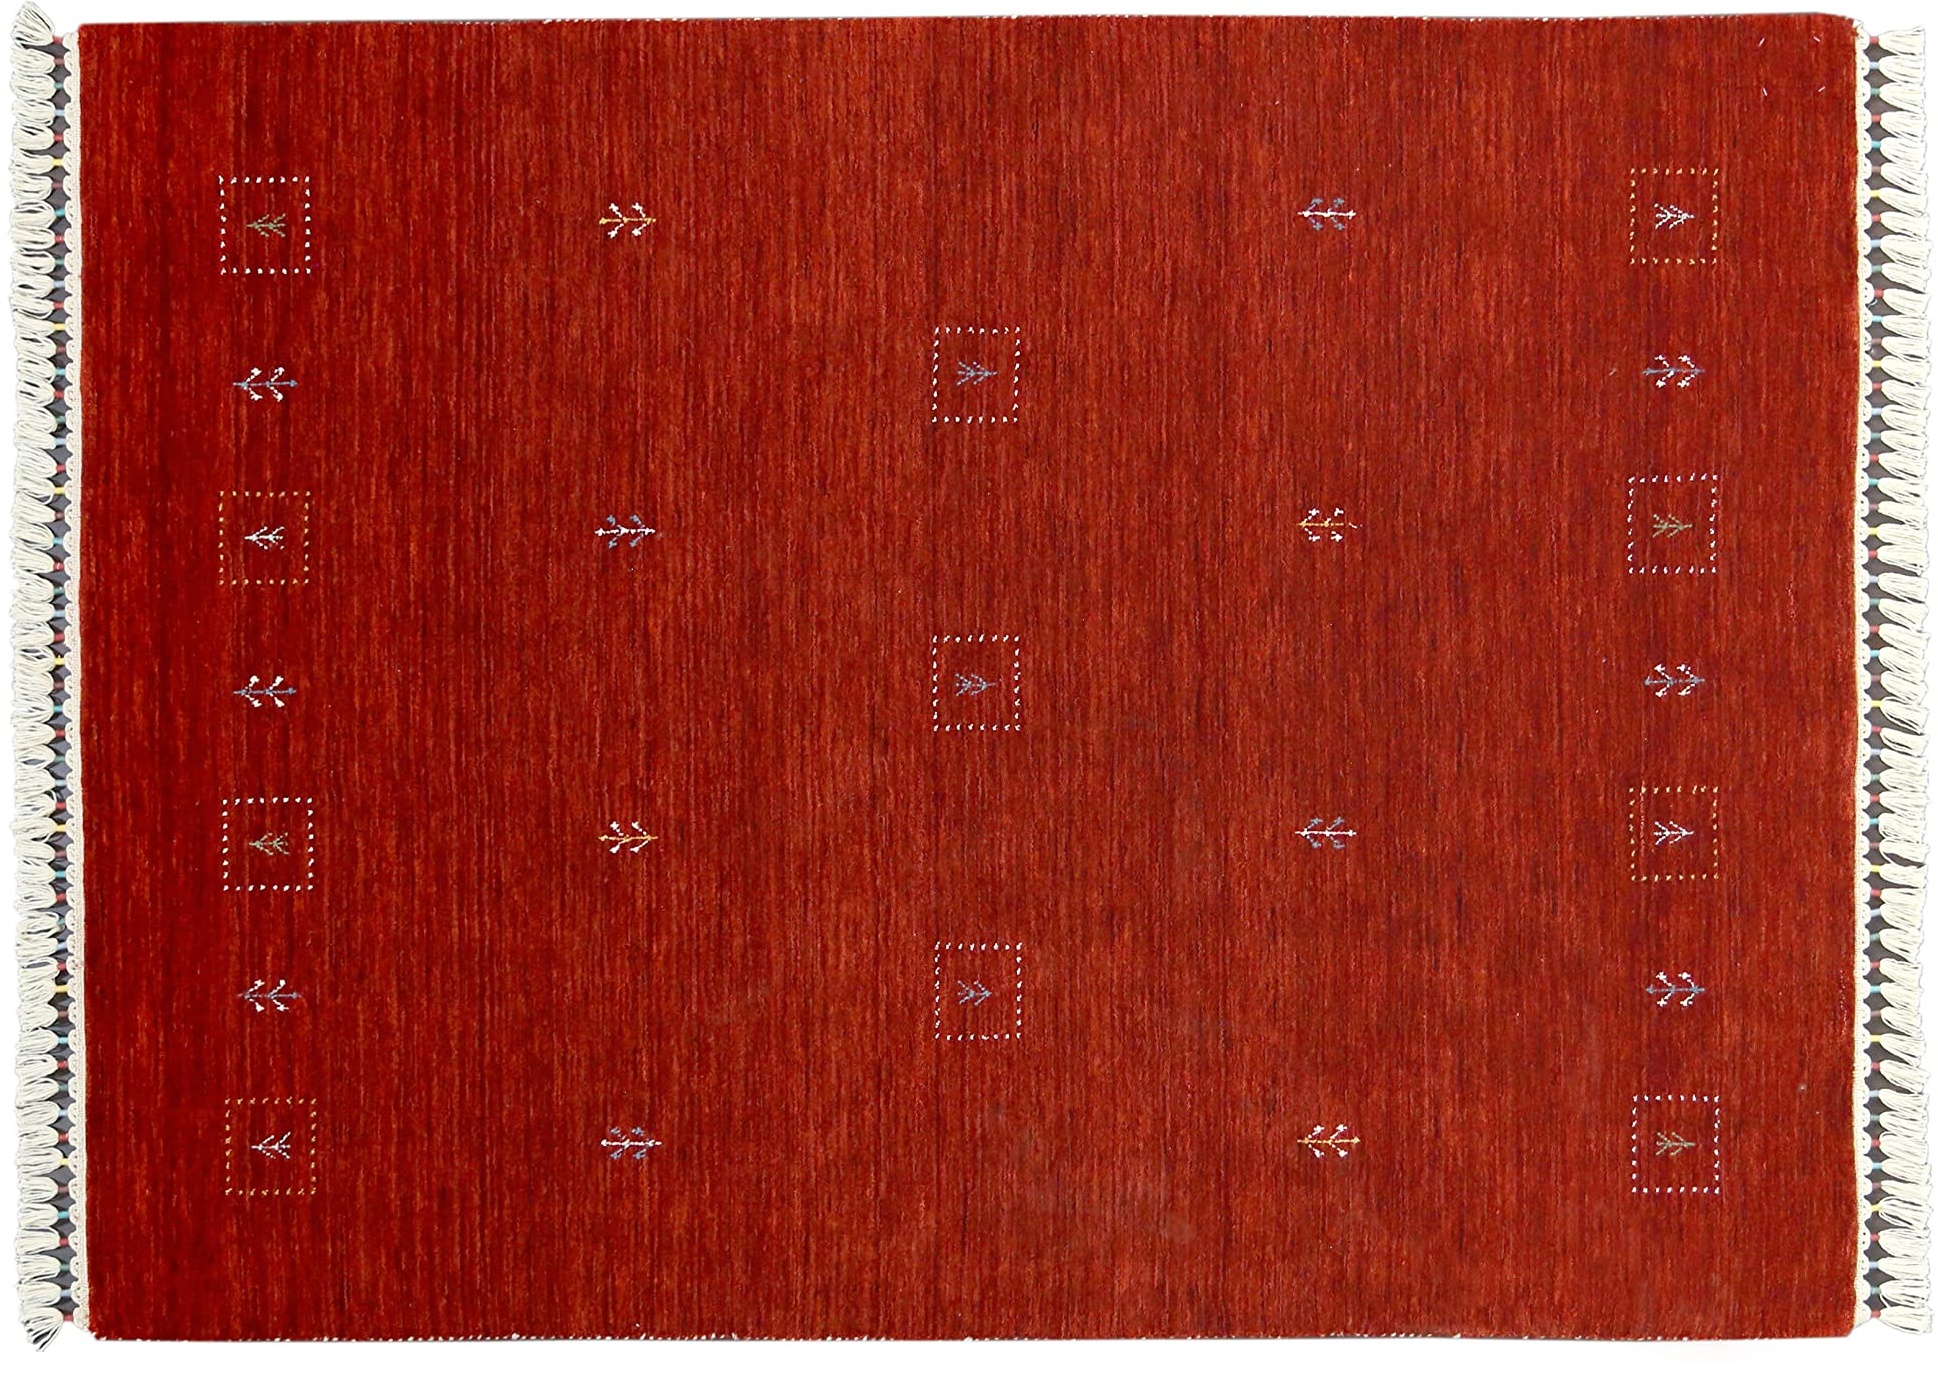 Moderner Teppich Lorry Buff GABBEH Home & Living 200 x 140 cm aus pflanzlicher Wolle in Rot. Ideal für Jede Art von Umgebung: Küche, Bad, Wohnzimmer, Schlafzimmer